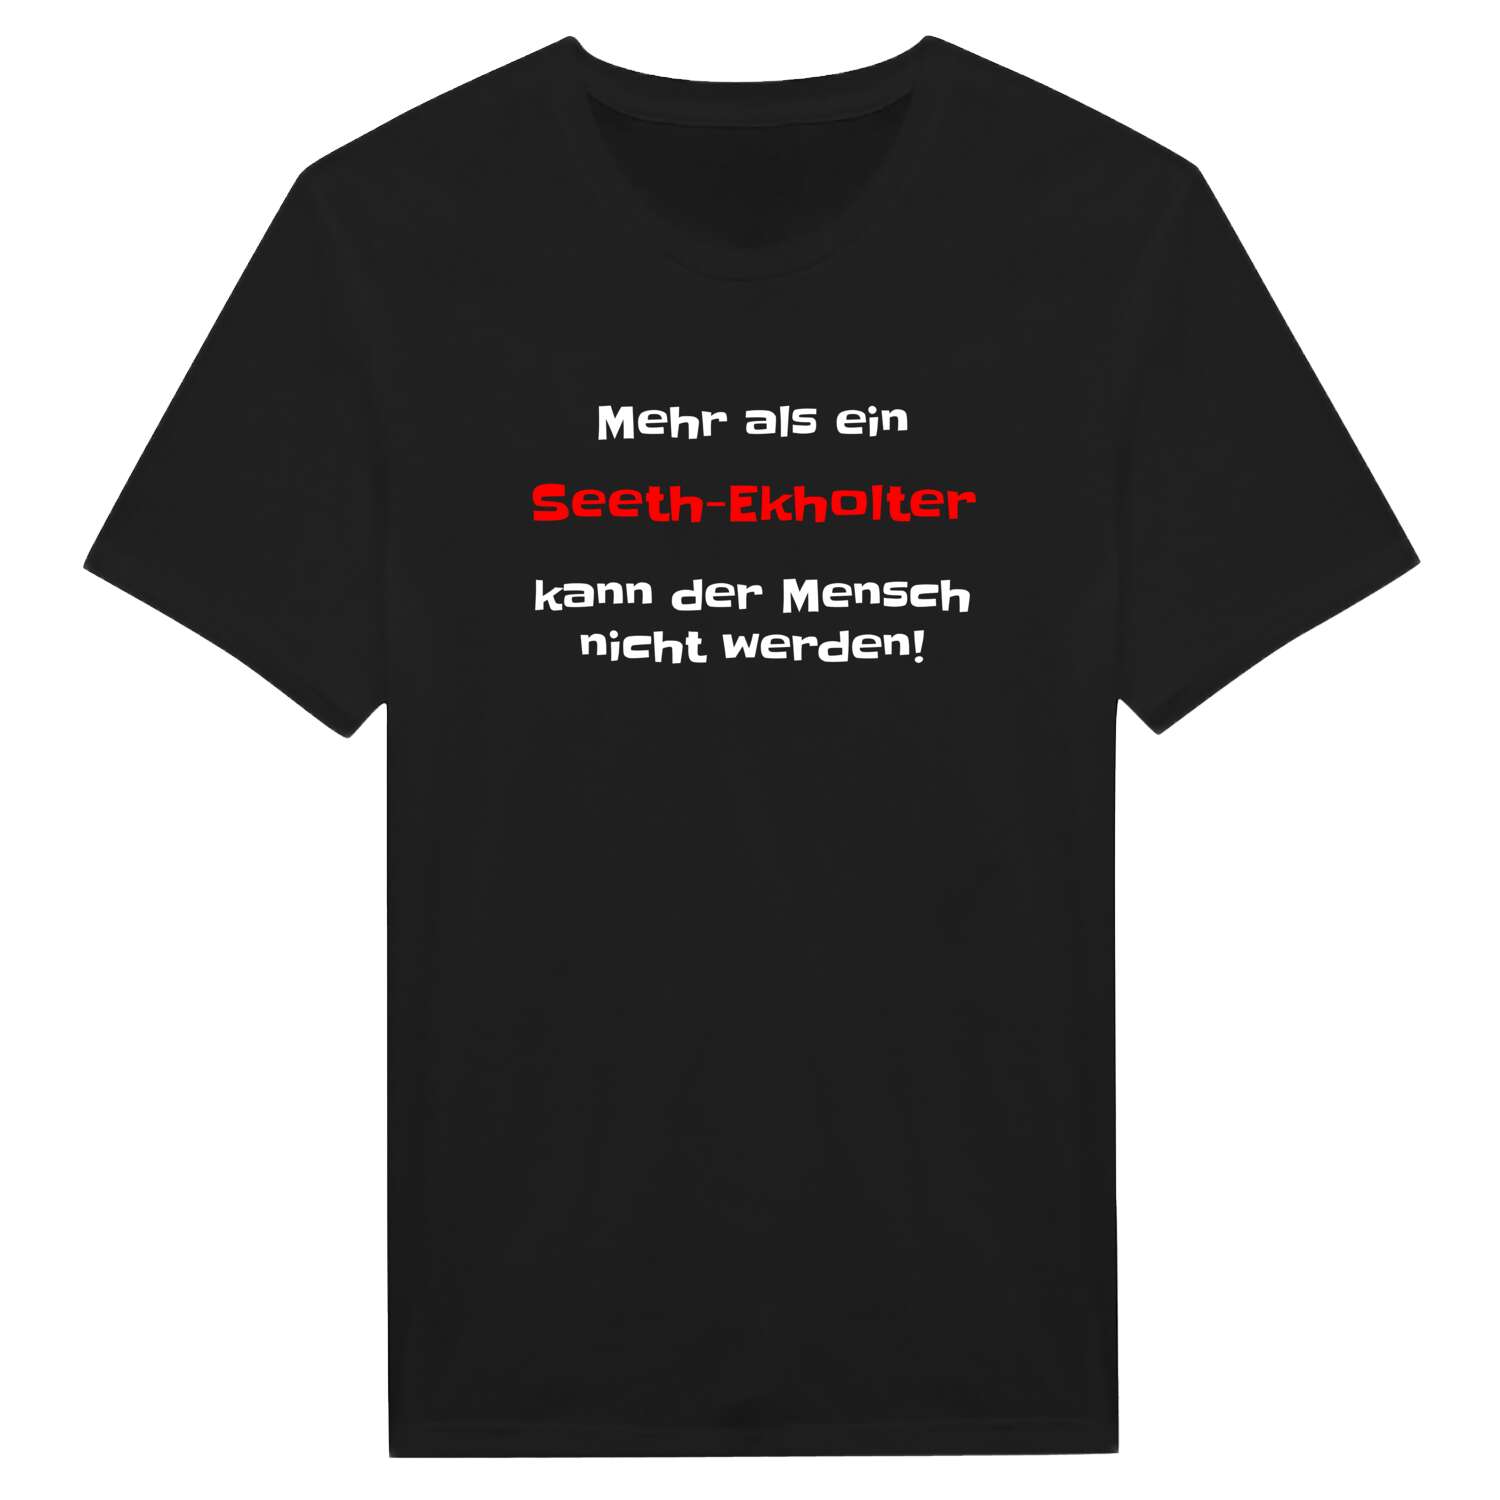 Seeth-Ekholt T-Shirt »Mehr als ein«